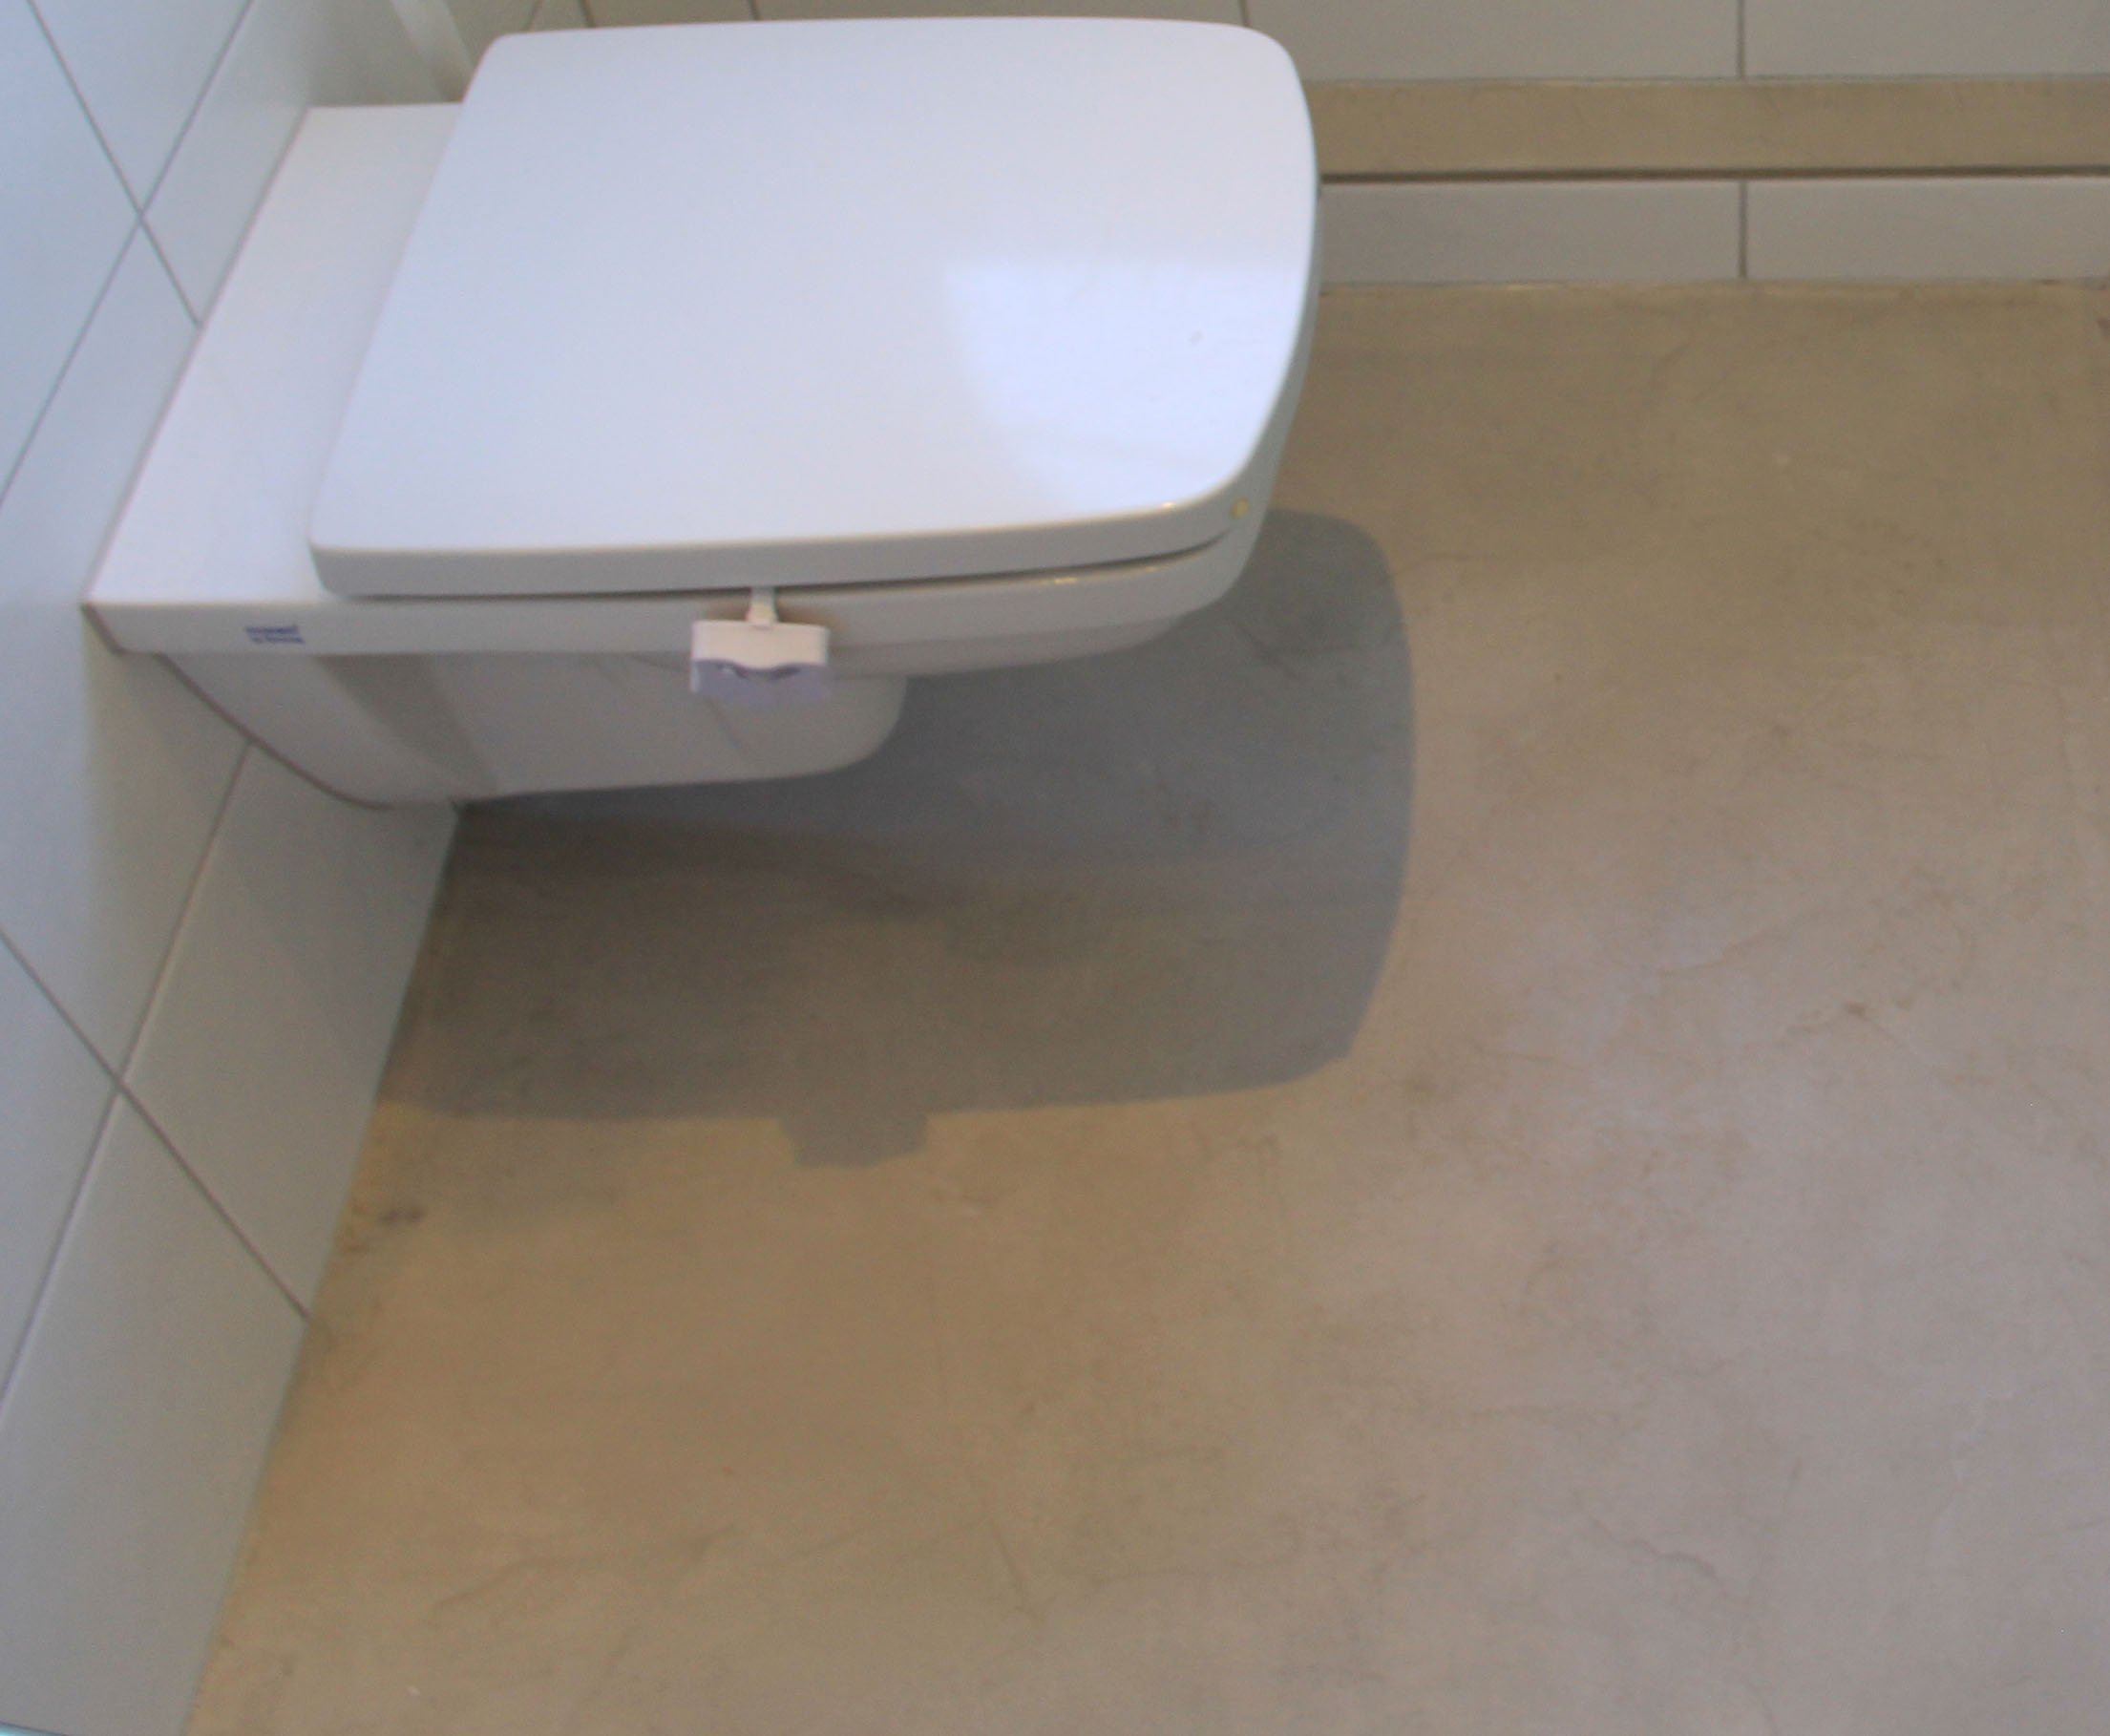 Betonboden gespachtelt fugenlos Wand grau Küche Bad Badezimmer Außenküche Grill Tisch Möbel mainTisch mainBeton mainGrill 14